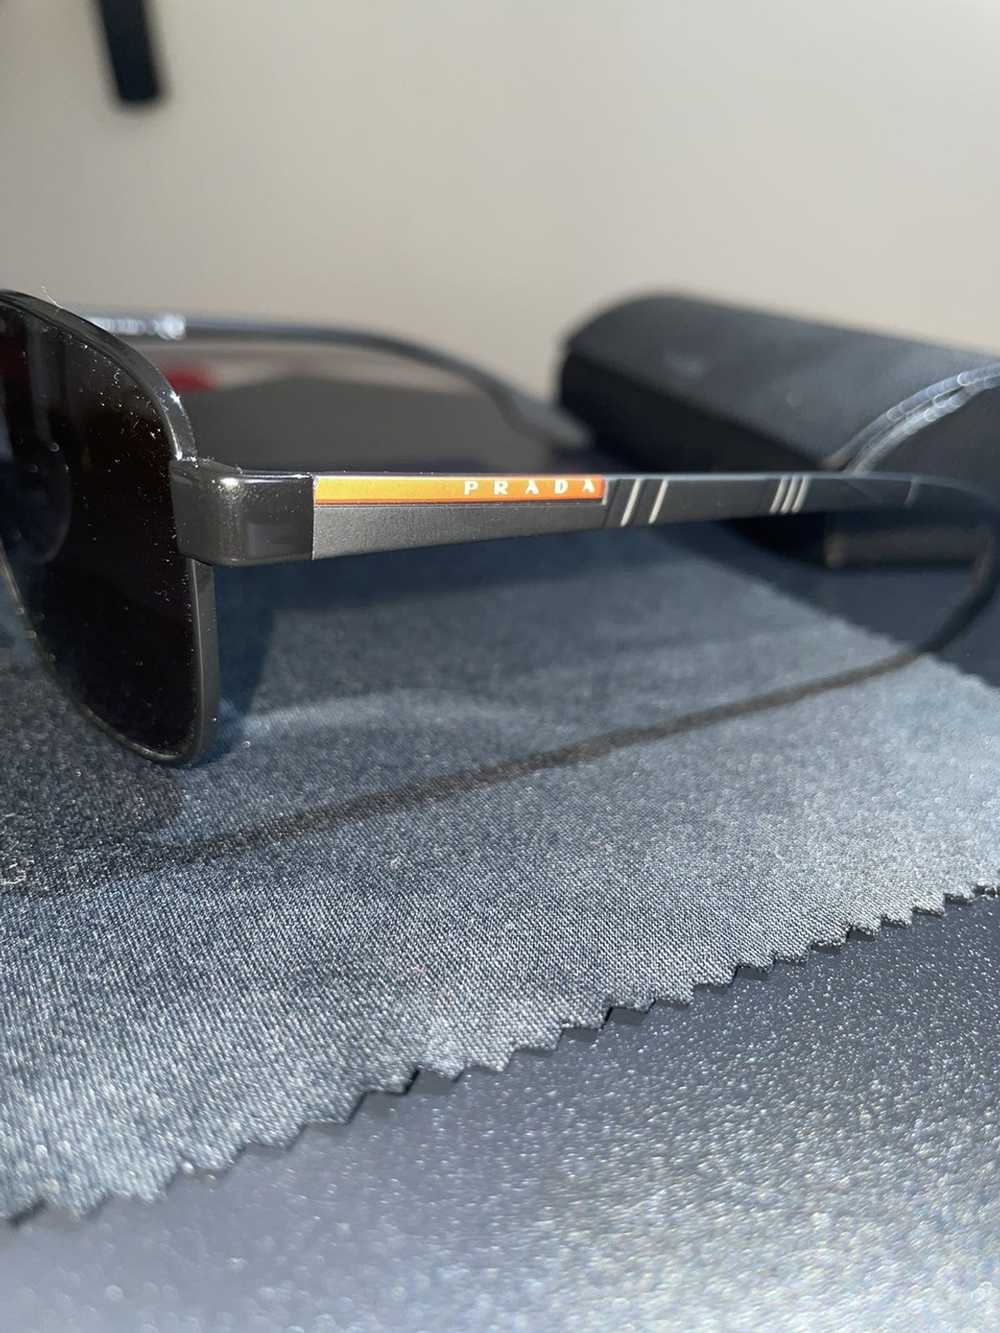 Prada Prada Sunglasses - image 4